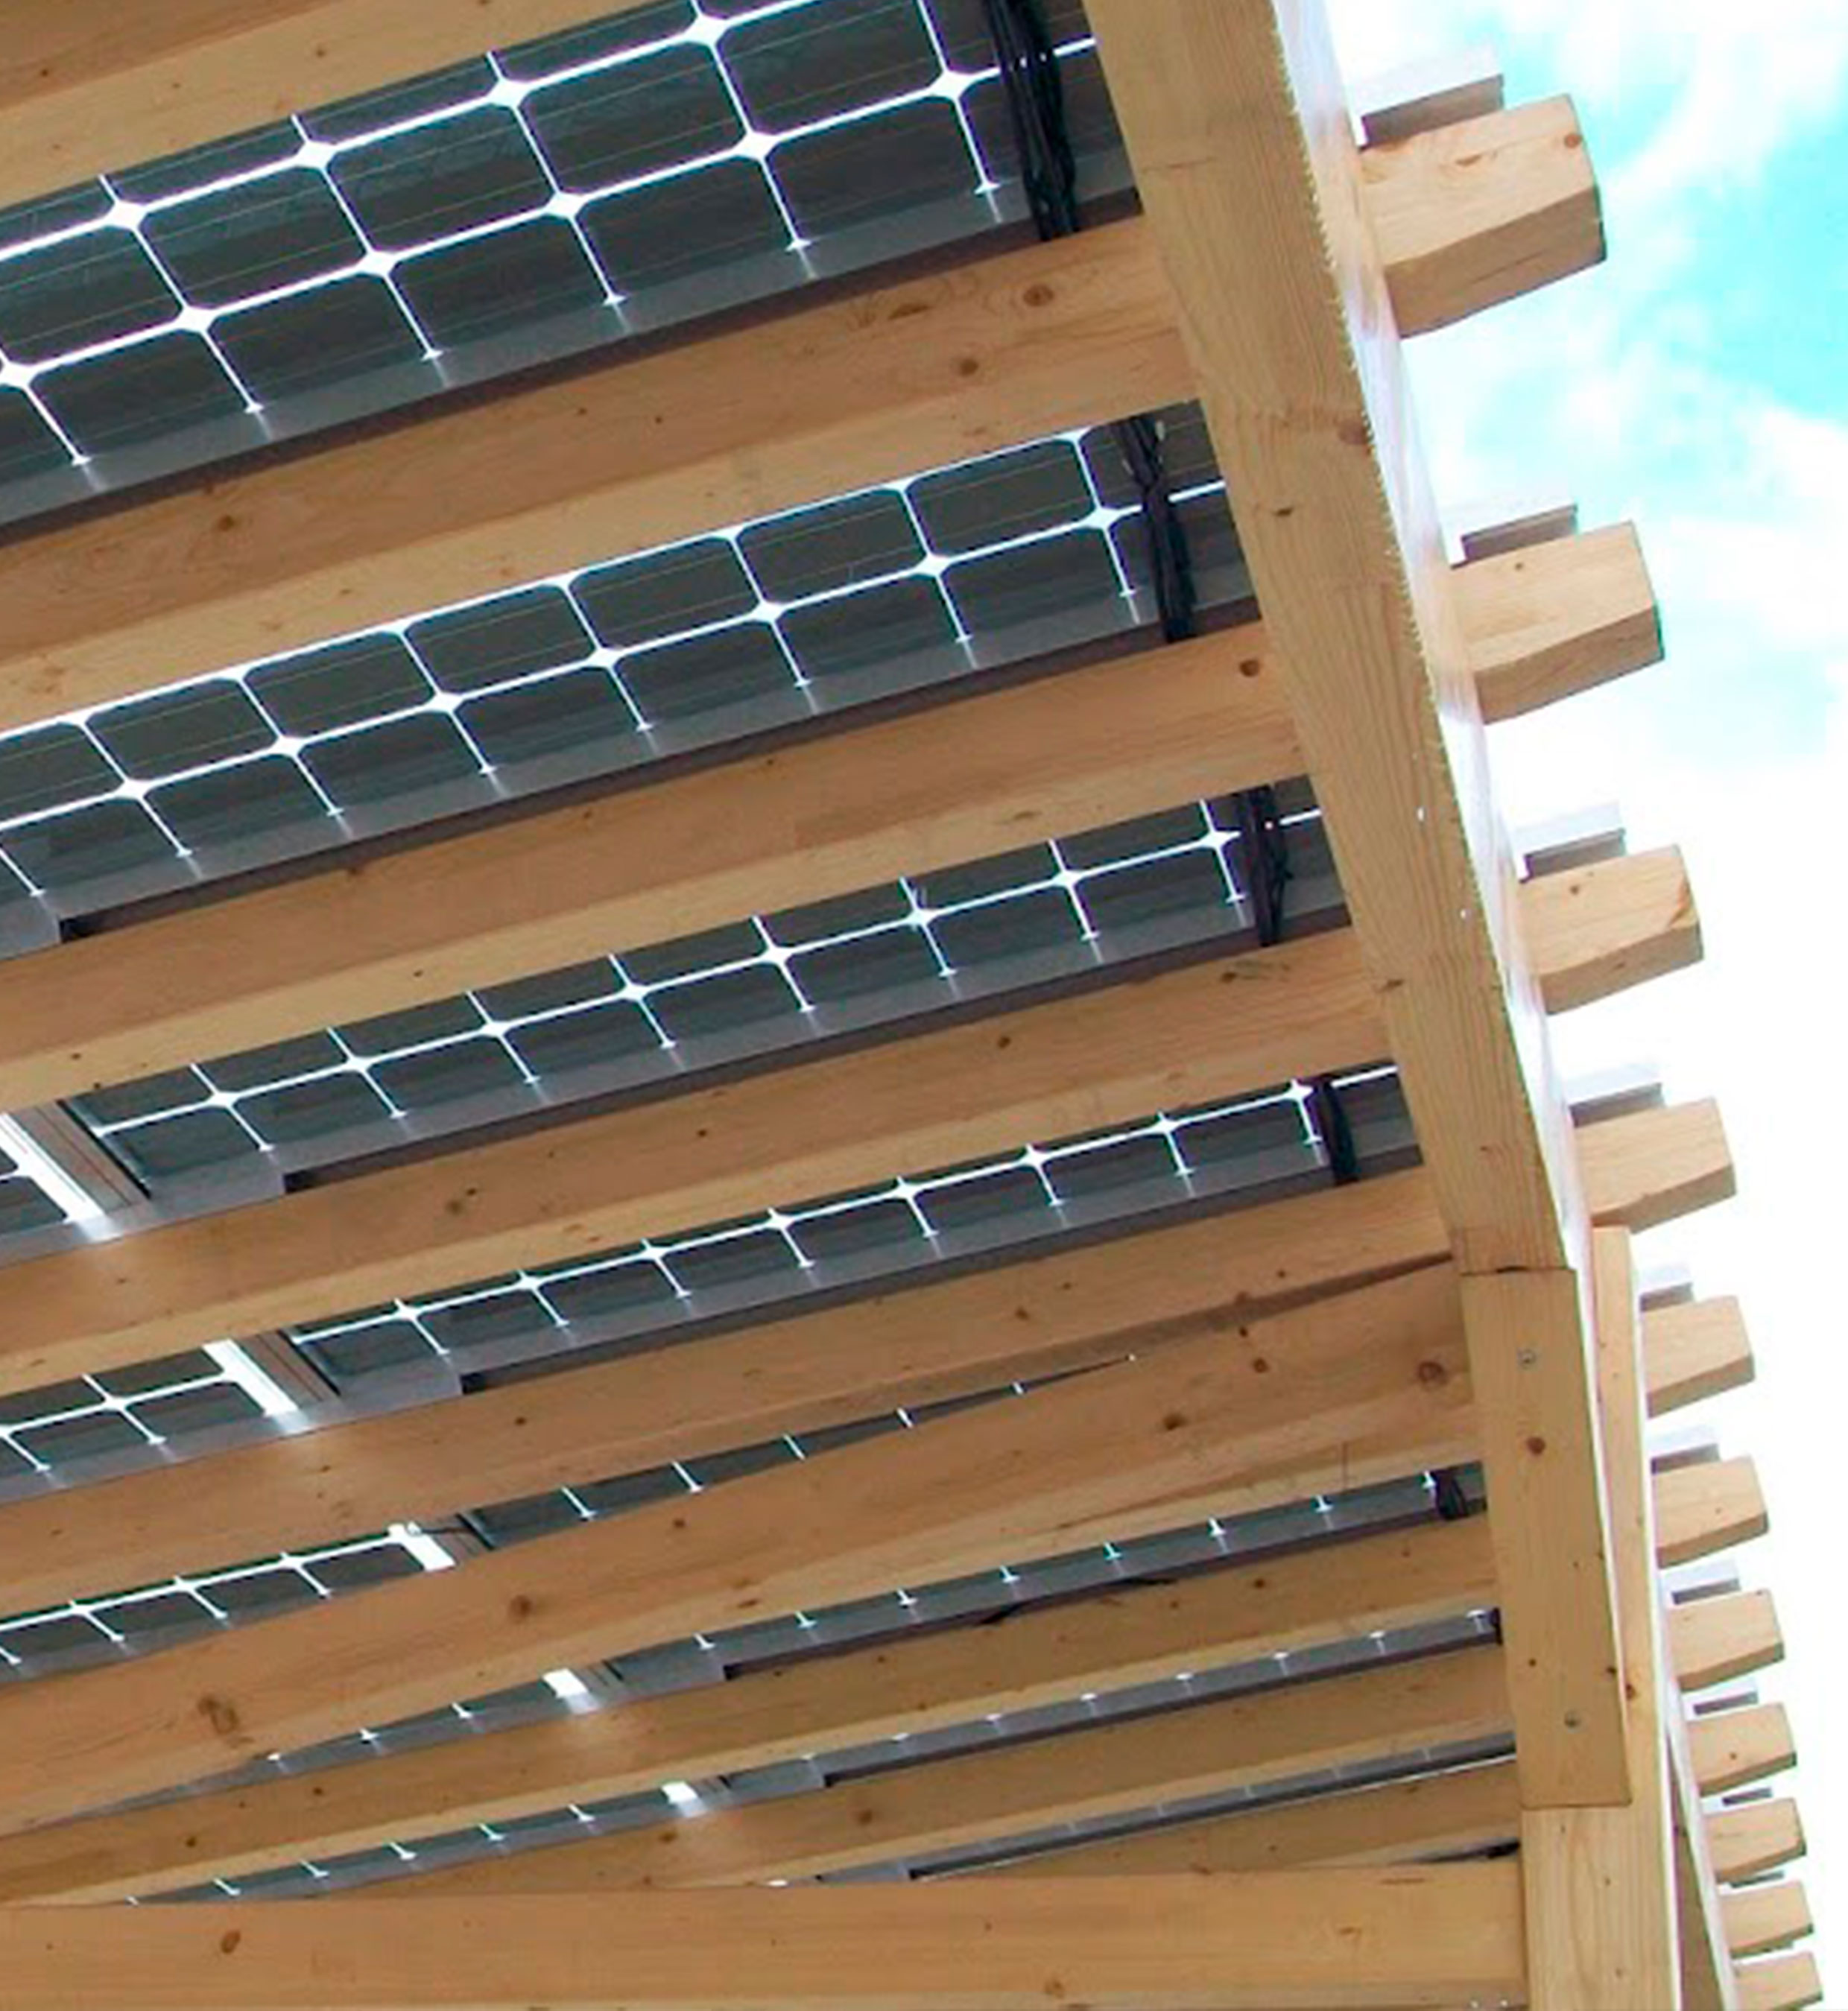 Casa techo fotovoltaico